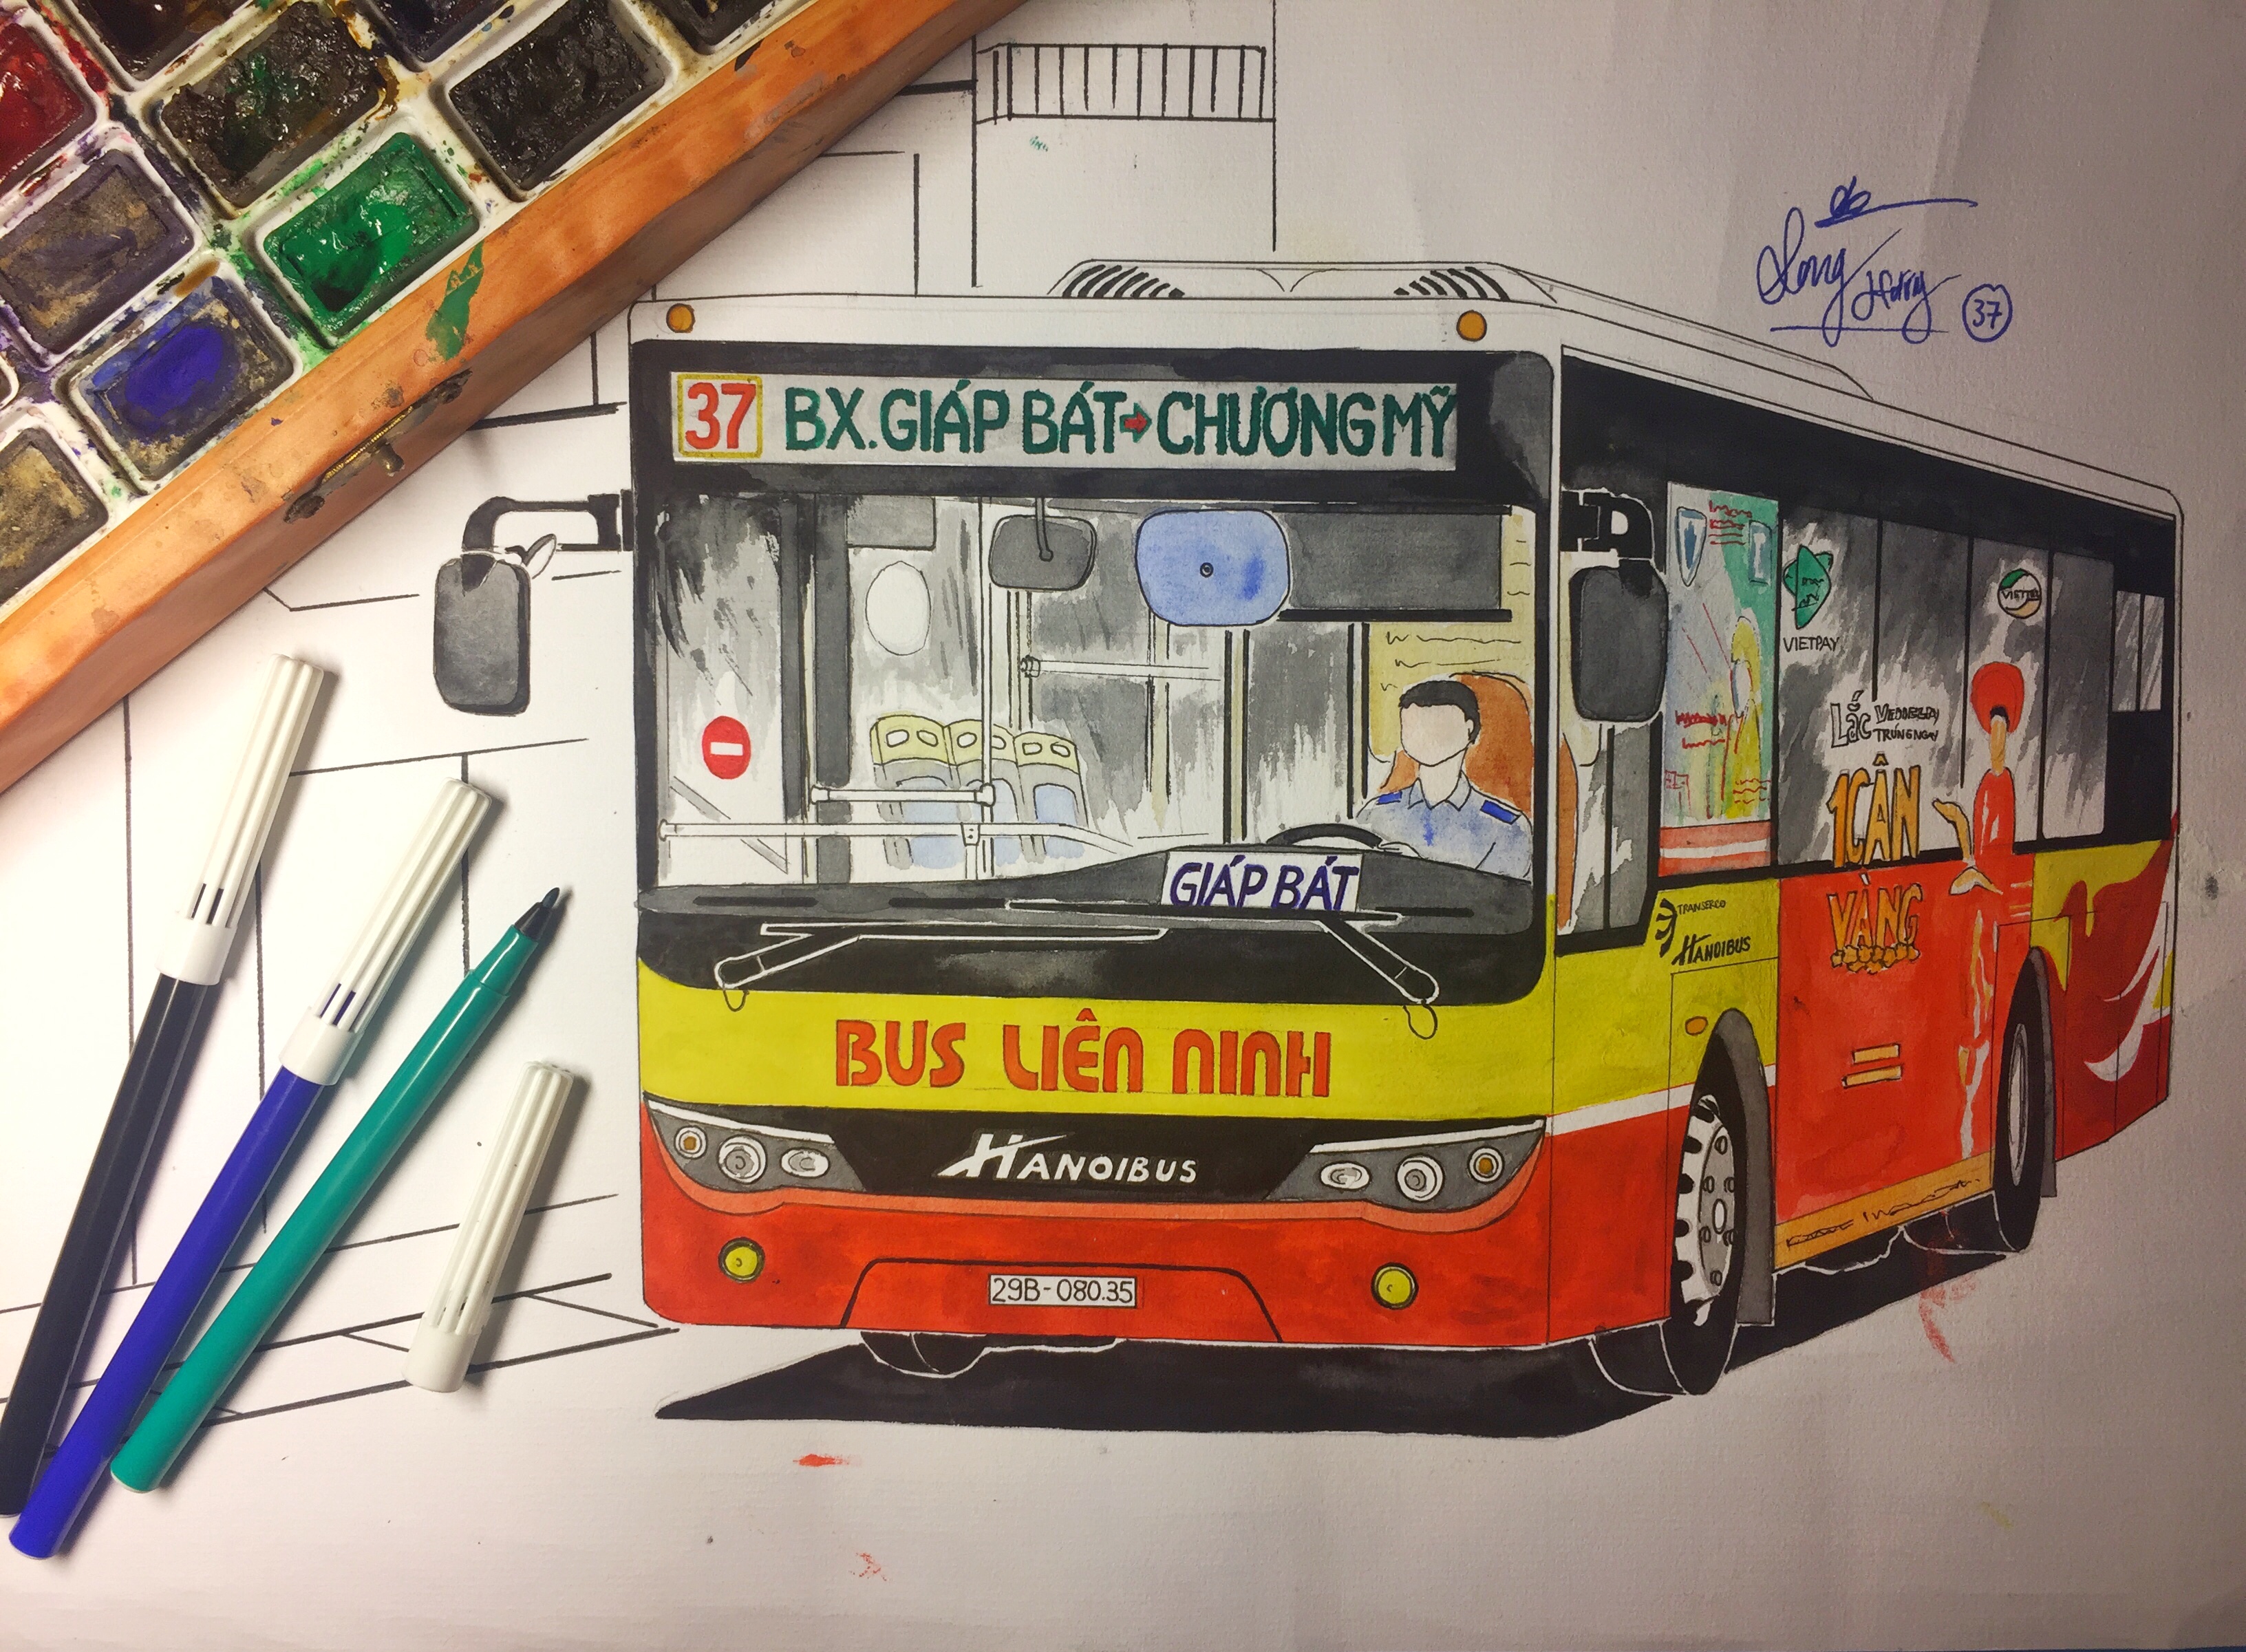 Tranh vẽ xe buýt Hà Nội: Hãy chiêm ngưỡng bức tranh vẽ xe buýt Hà Nội đầy màu sắc và sinh động, với những chi tiết đặc trưng của phương tiện giao thông truyền thống này.